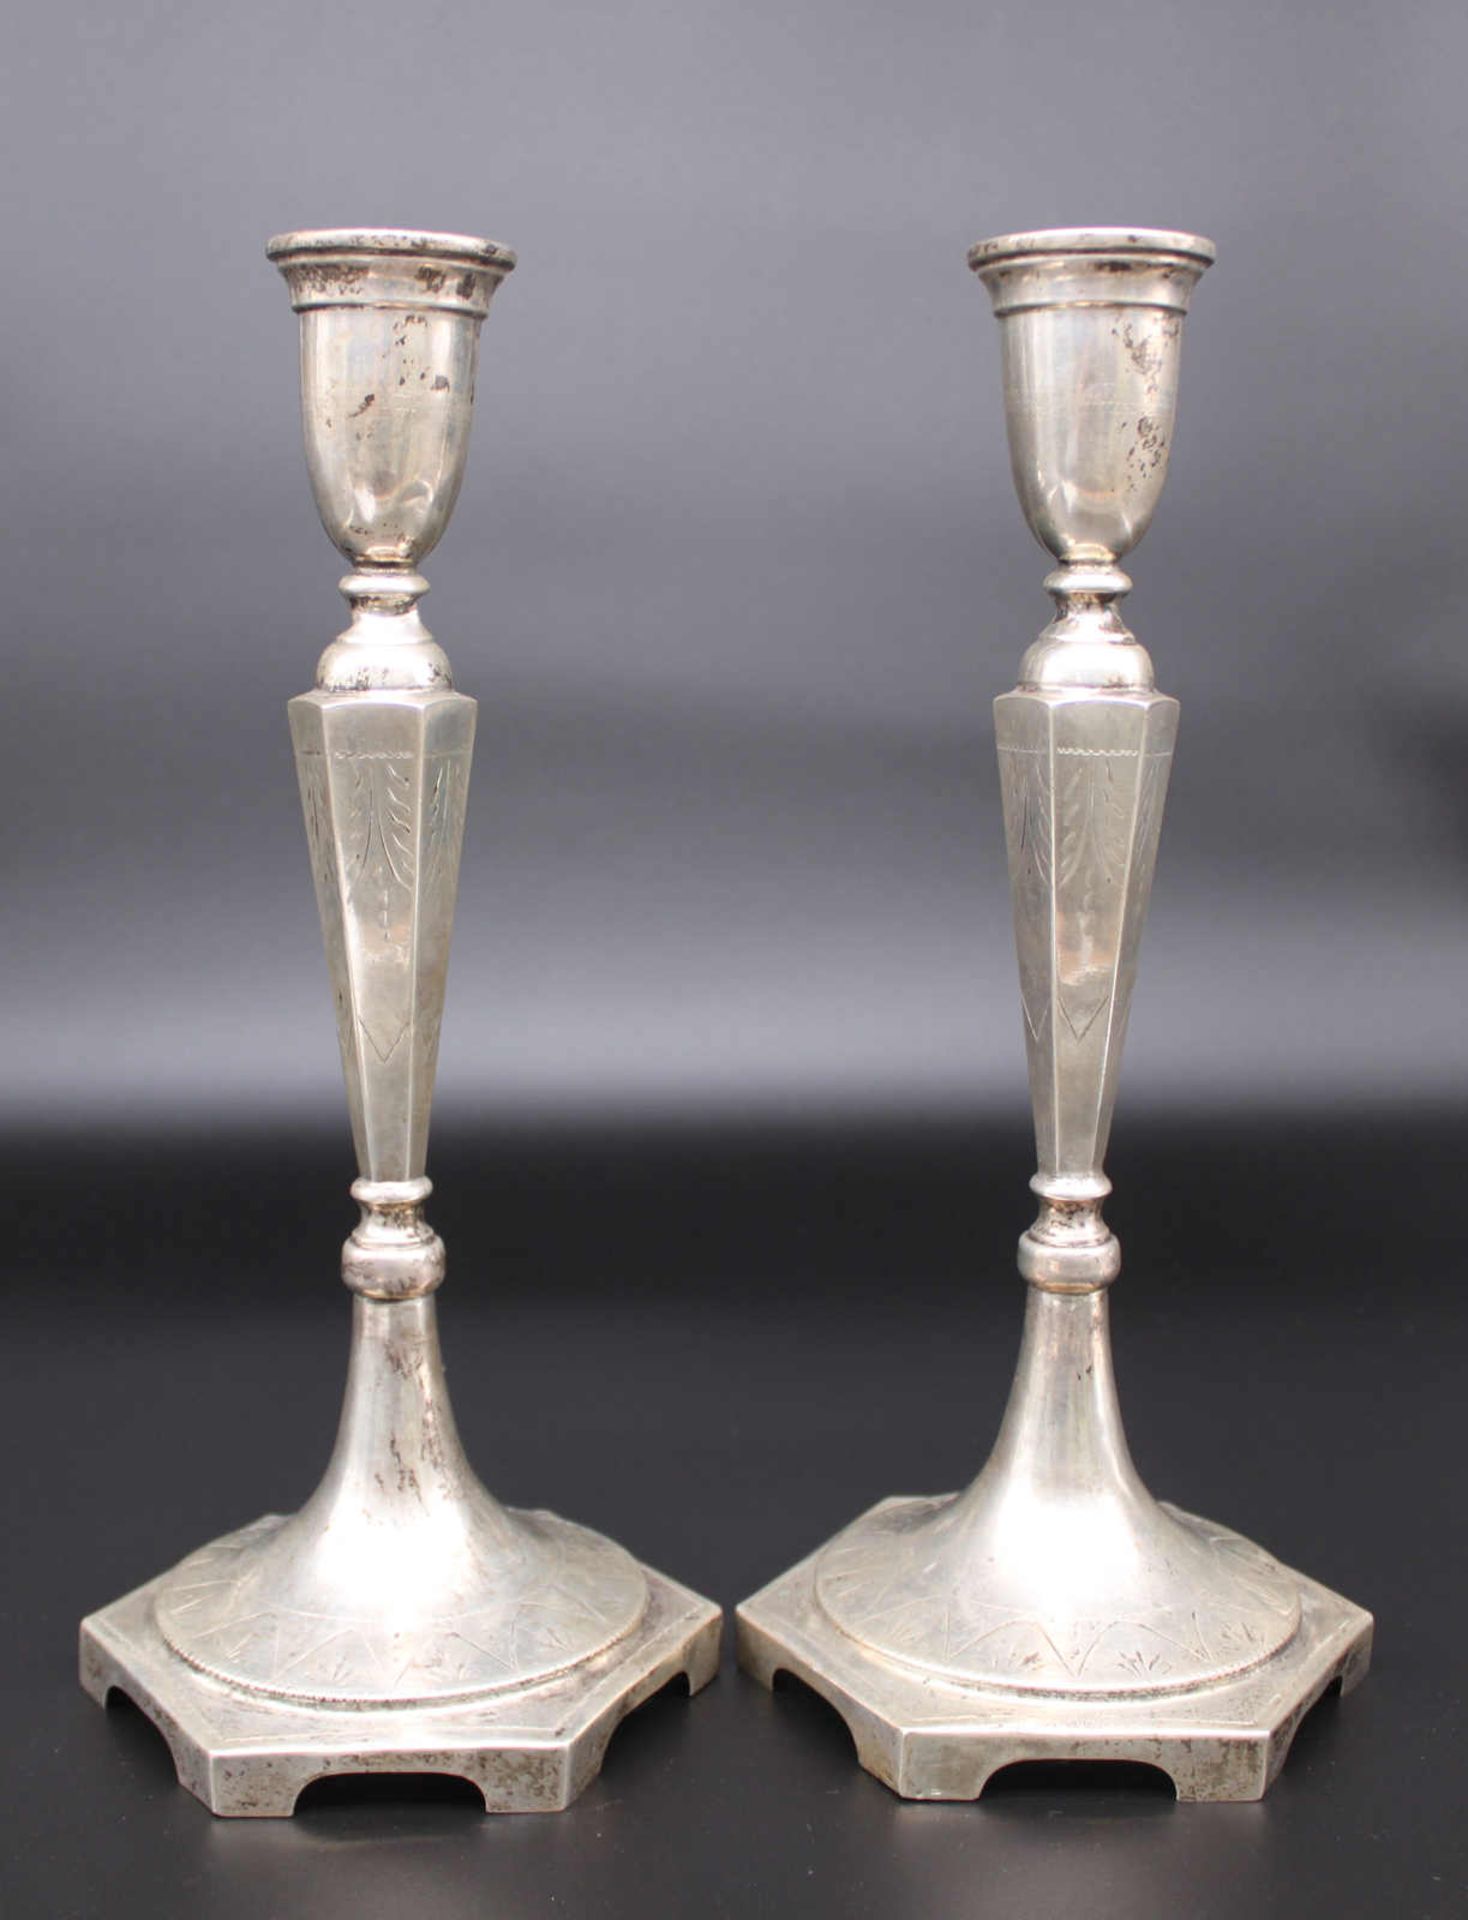 Paar Silberleuchter, Mitte 19. Jahrhundert. 3 Punzen, wahrscheinlich Österreich. Maße ca. 30 x 14